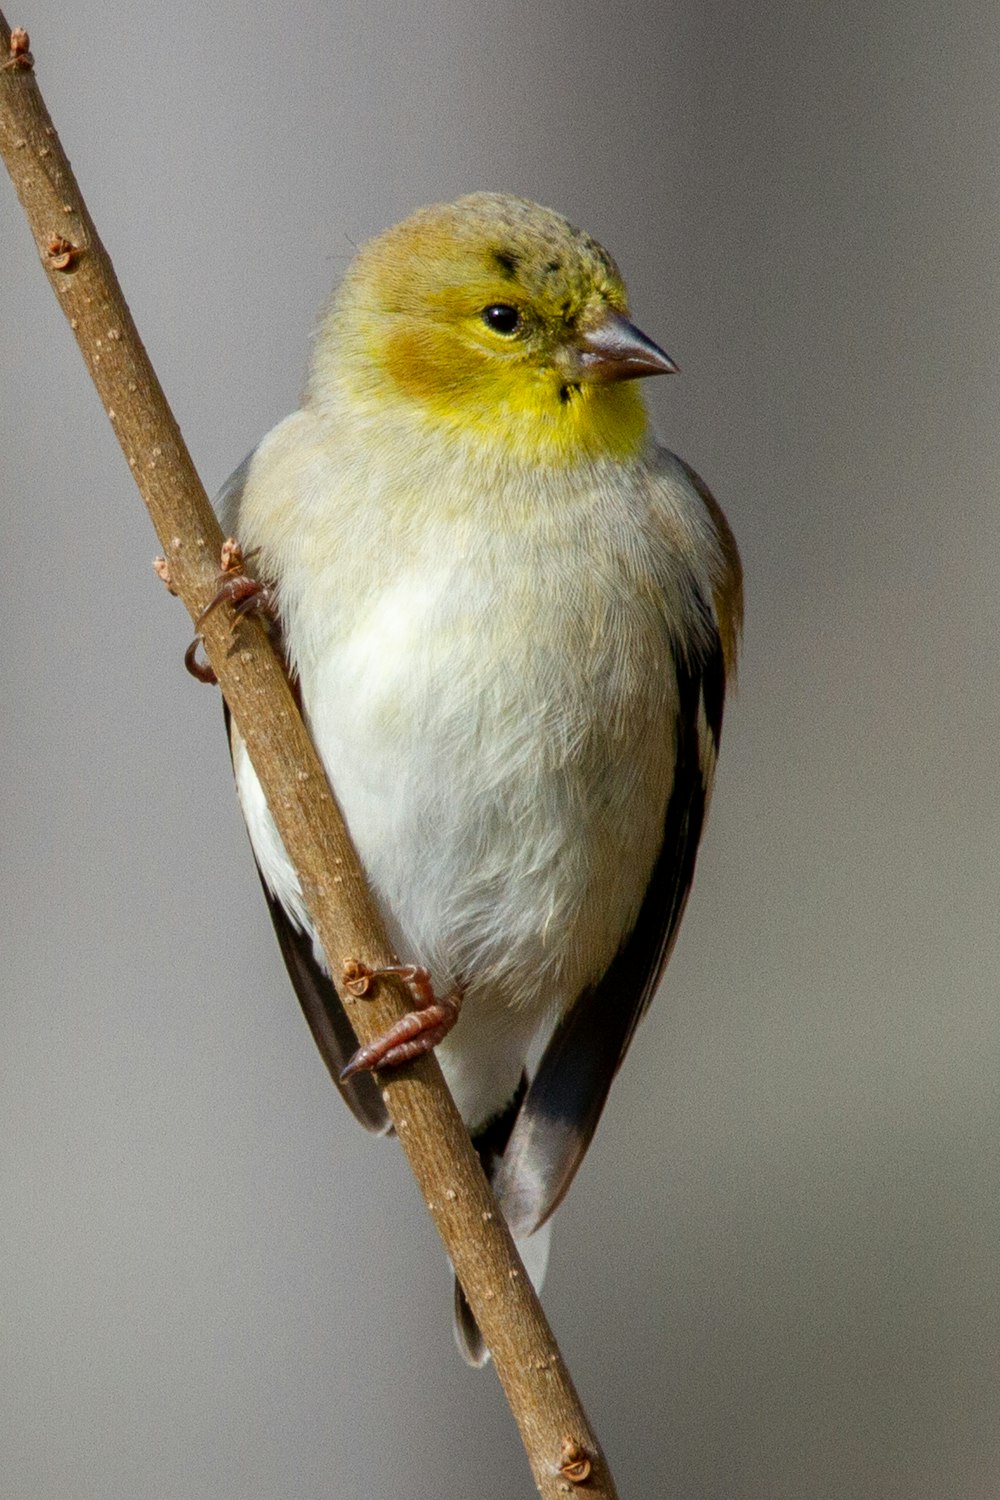 枝にとまった小さな黄色と白の鳥